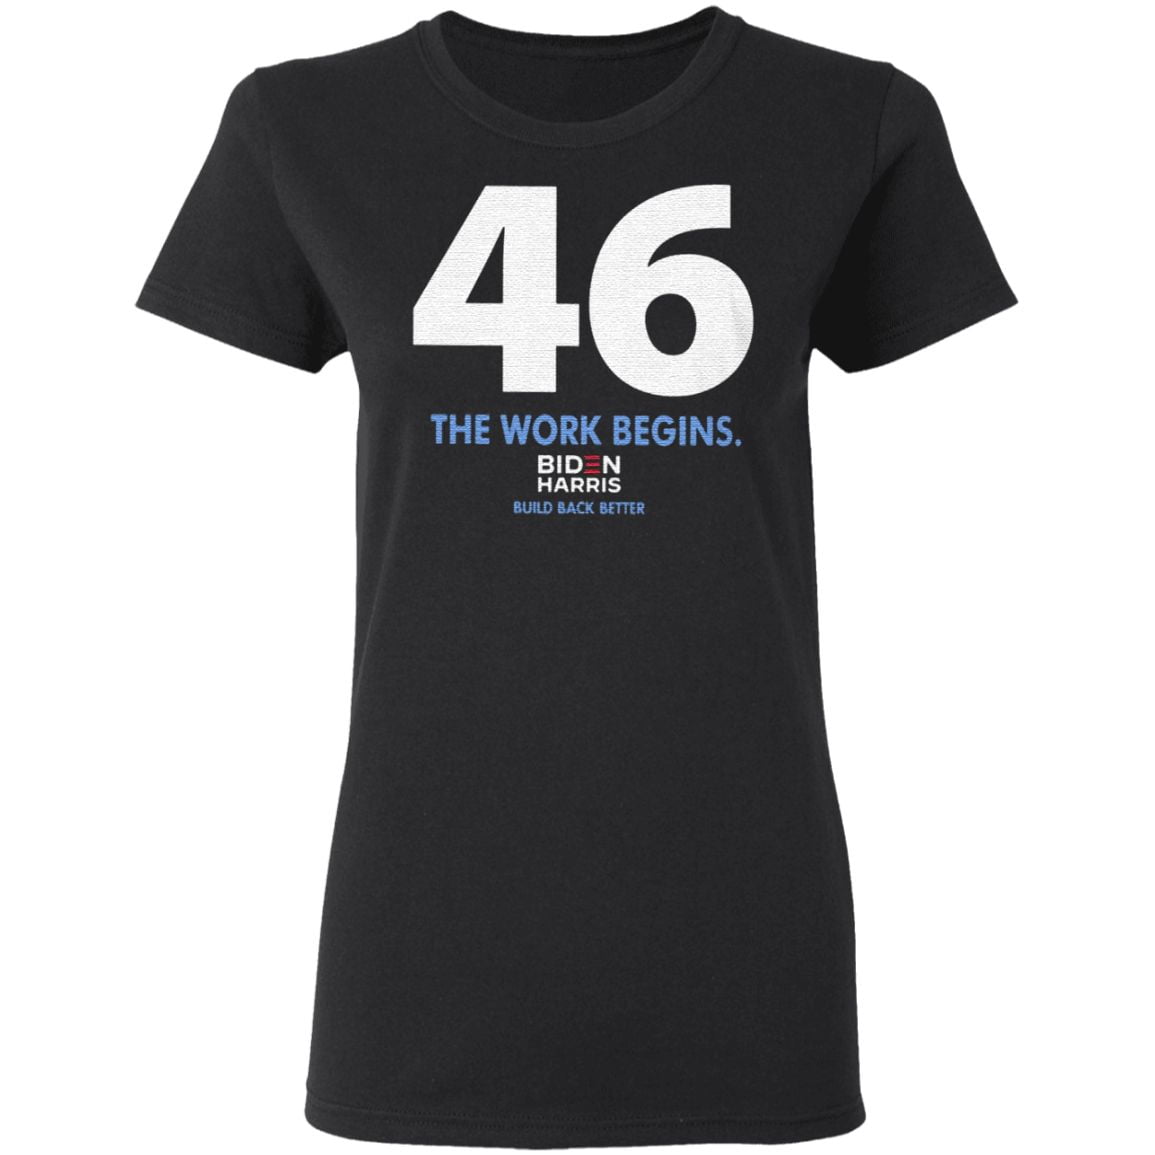 46 The Work Begins Biden Harris Build Back Better T Shirt